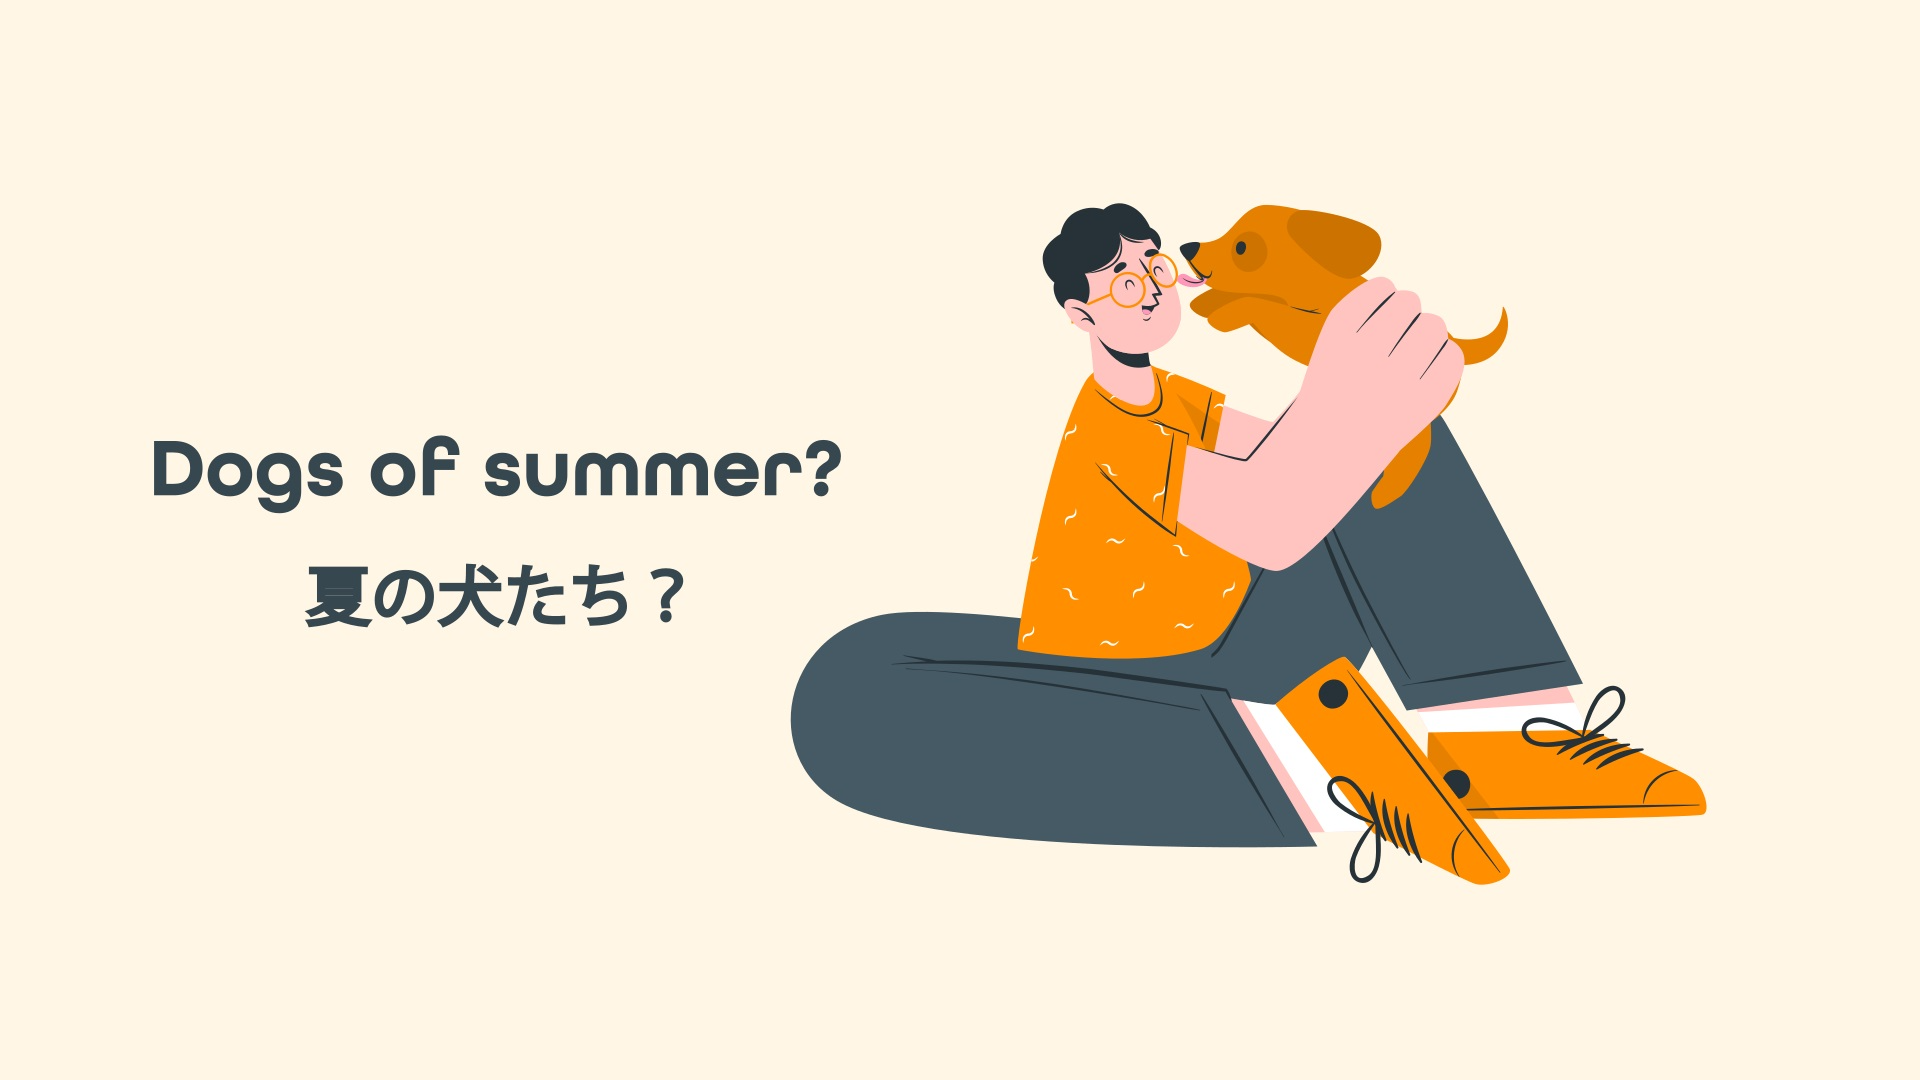 Dogs of summer? 夏の犬たち？